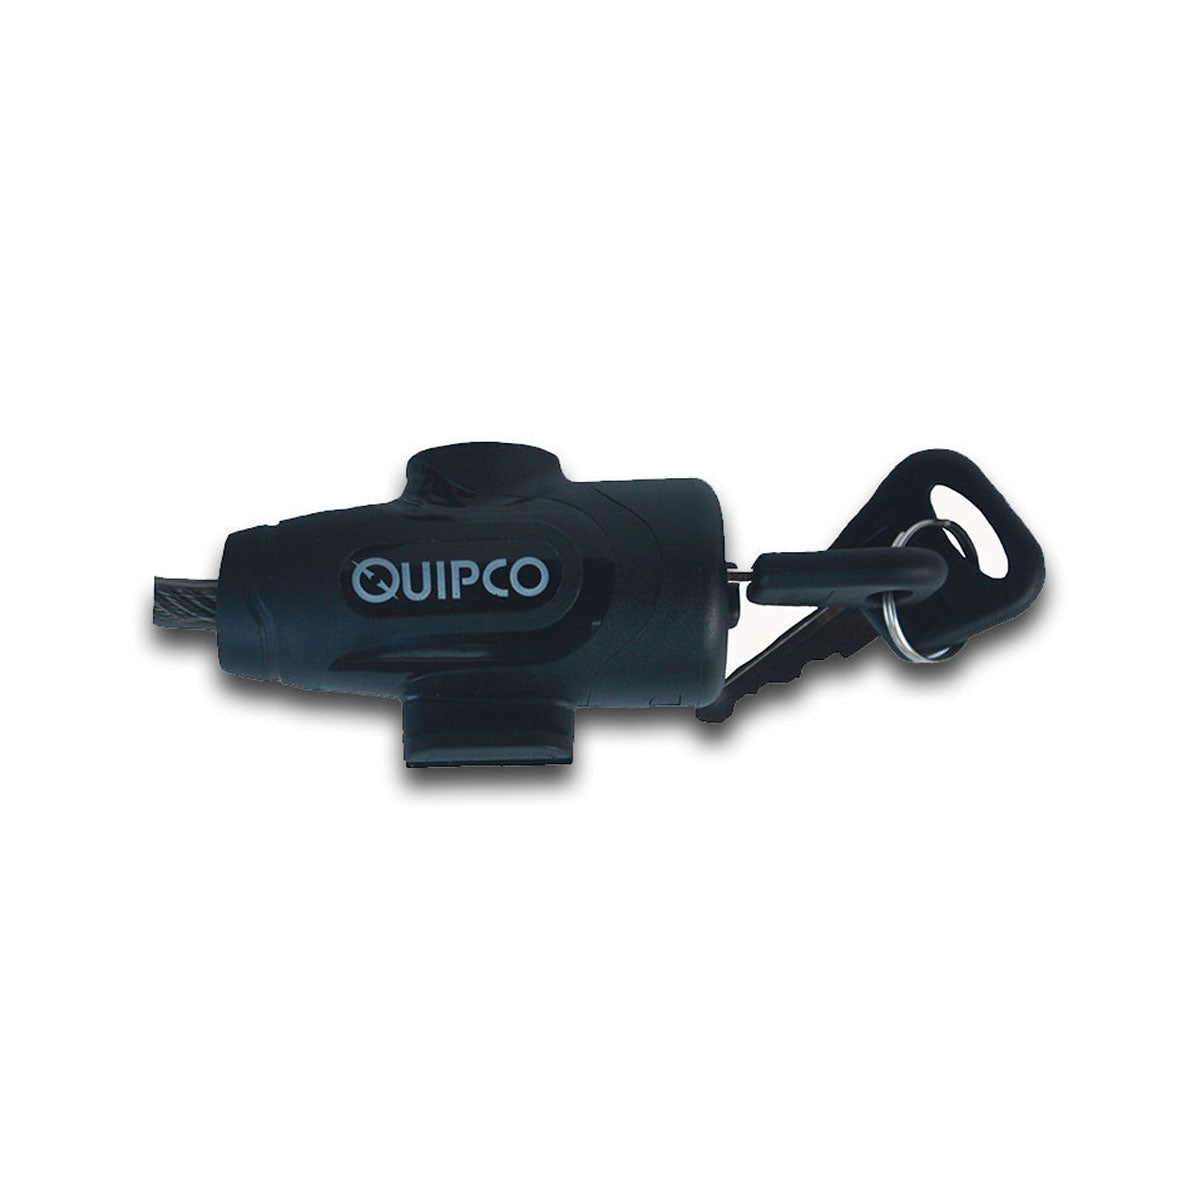 Quipco Cycle Lock / Motorcycle Helmet Lock - Outdoor Travel Gear 3